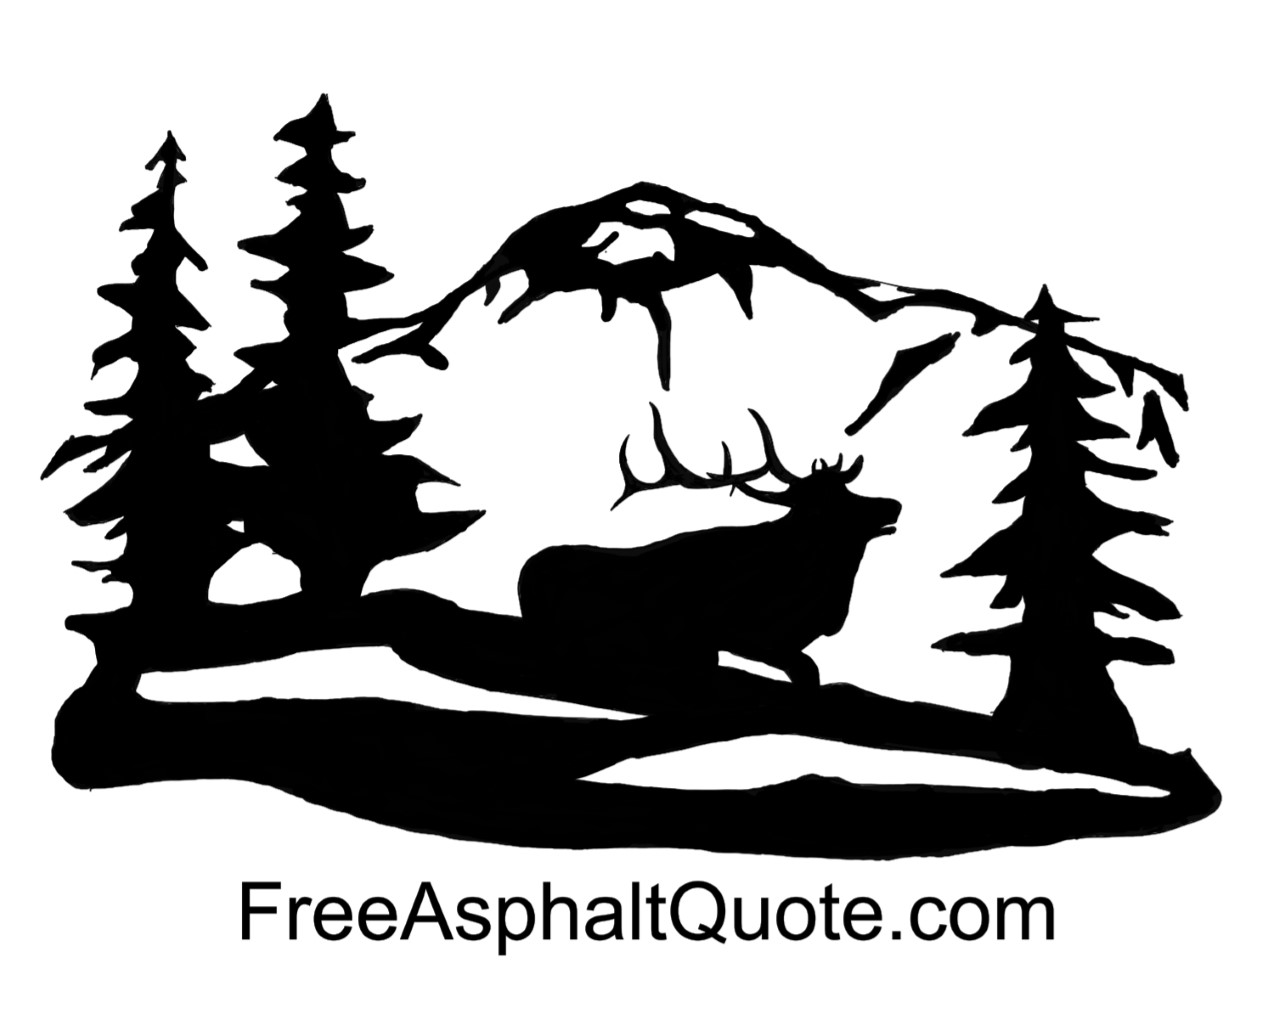 Free Asphalt Quote .com Logo